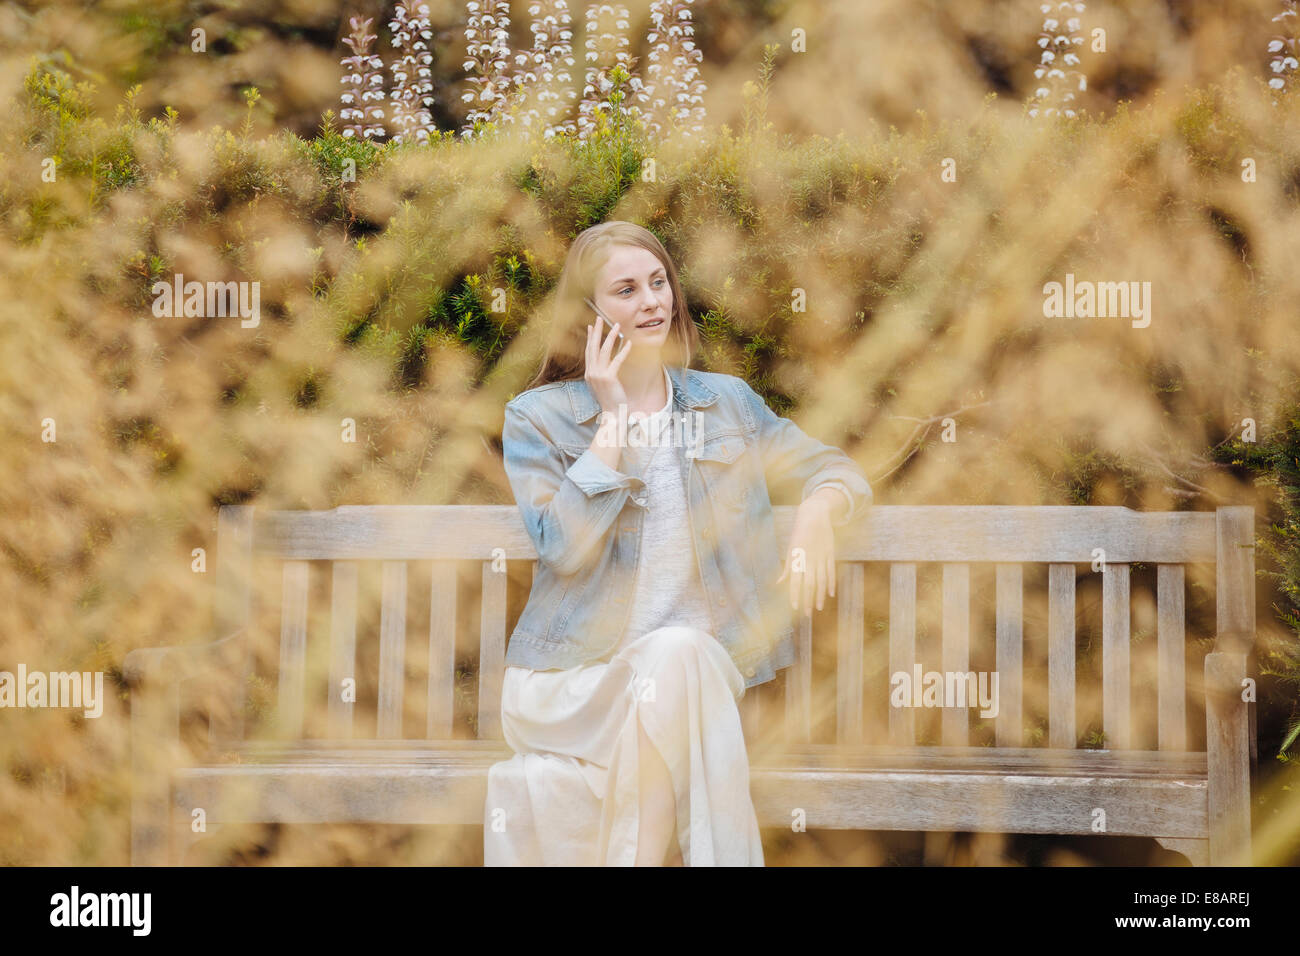 Jeune femme assise sur le banc de parc chatting on smartphone in park Banque D'Images